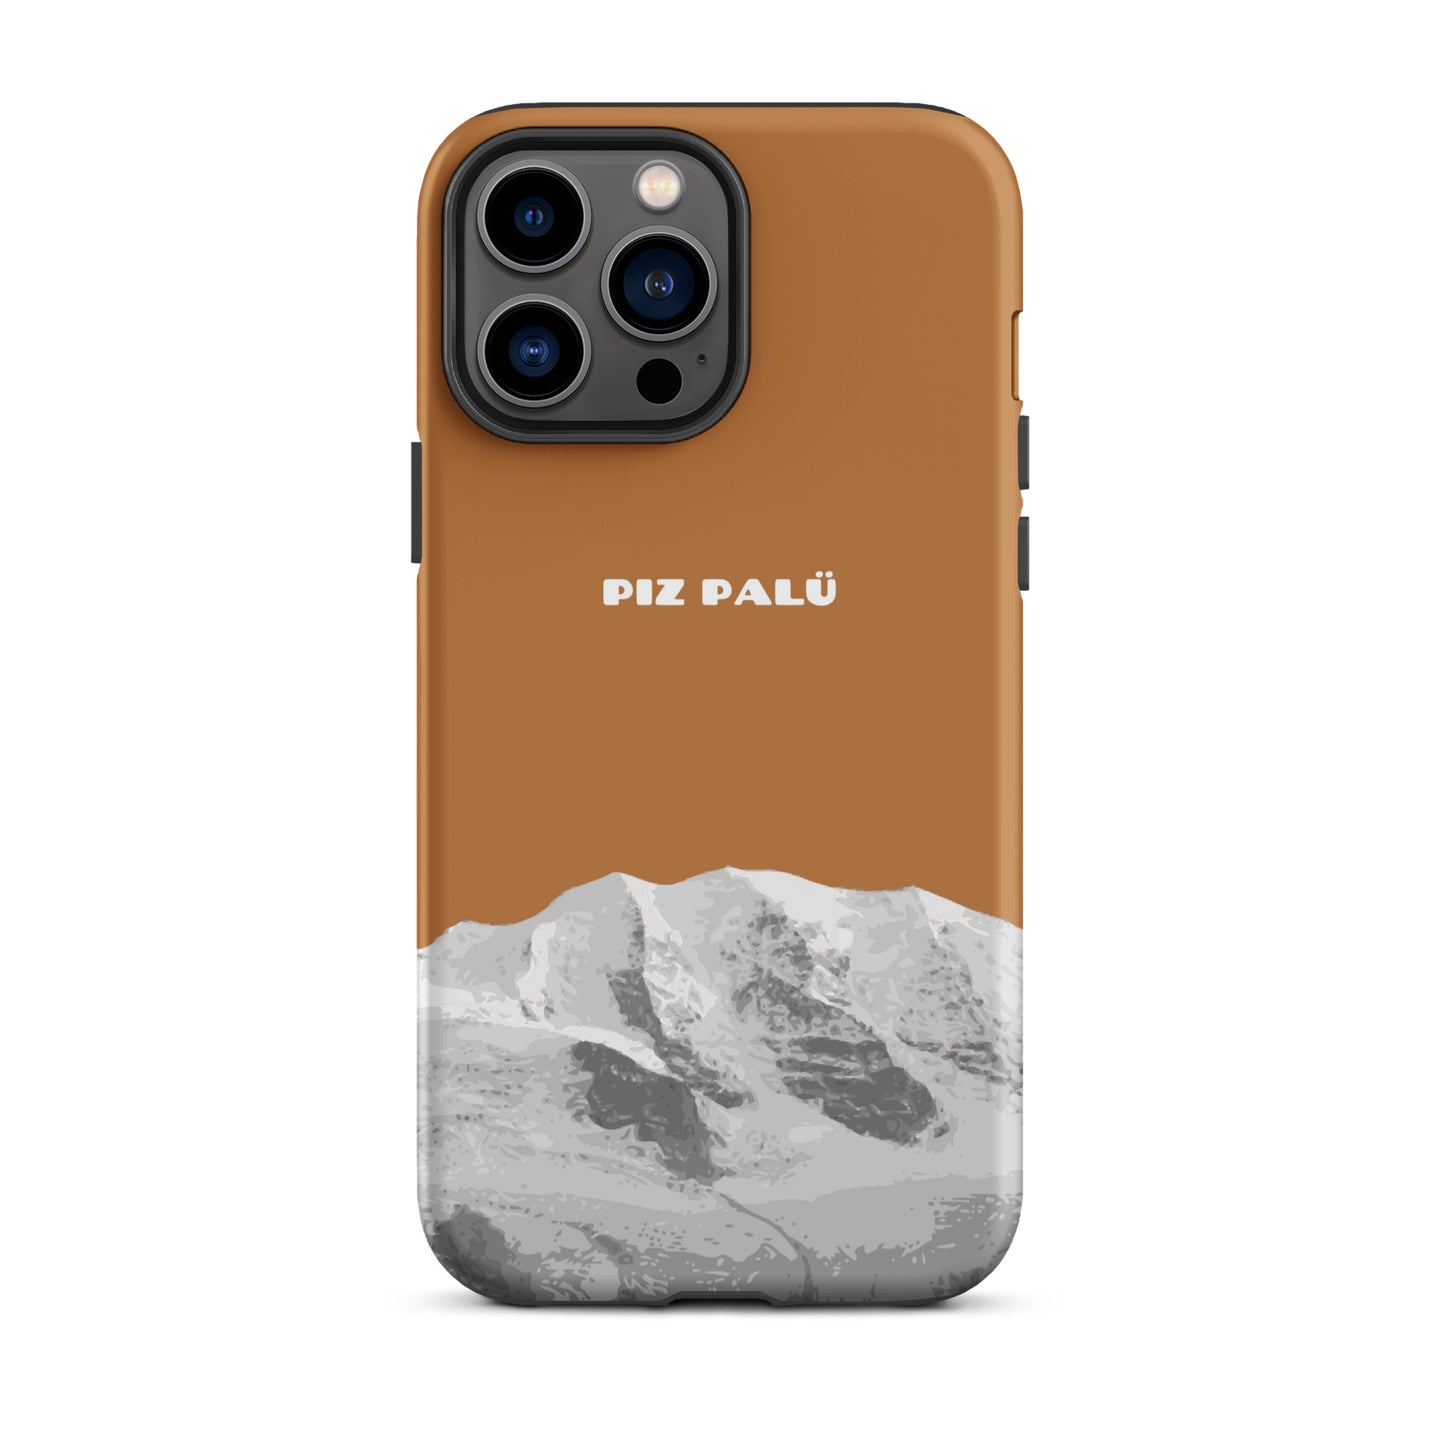 Hülle für das iPhone 13 Pro Max von Apple in der Farbe Kupfer, dass den Piz Palü in Graubünden zeigt.